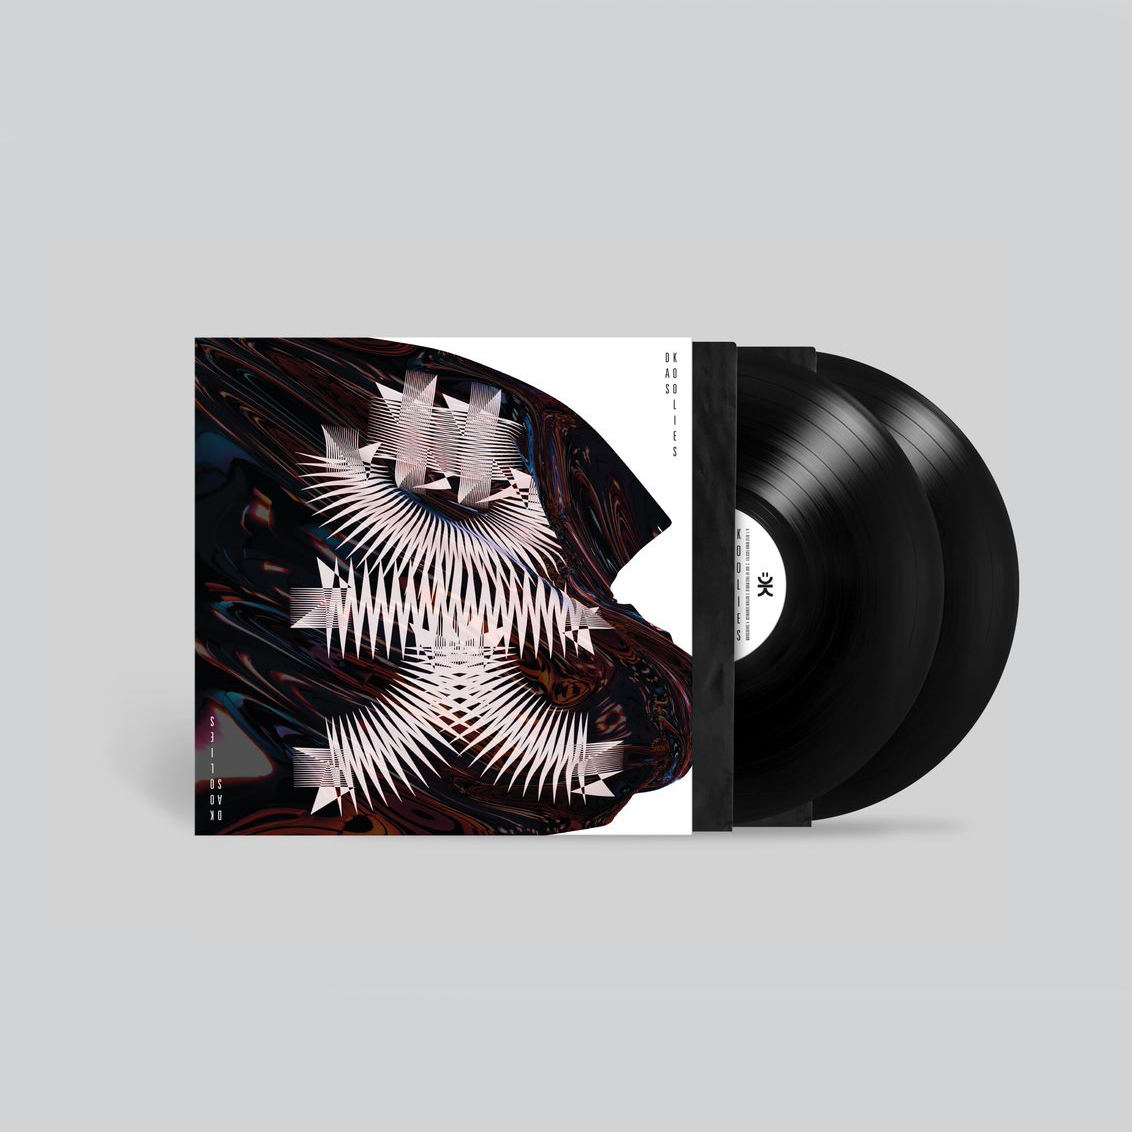 DK.01: Black Vinyl 2LP + Exclusive Signed Print [100 Copies Available]